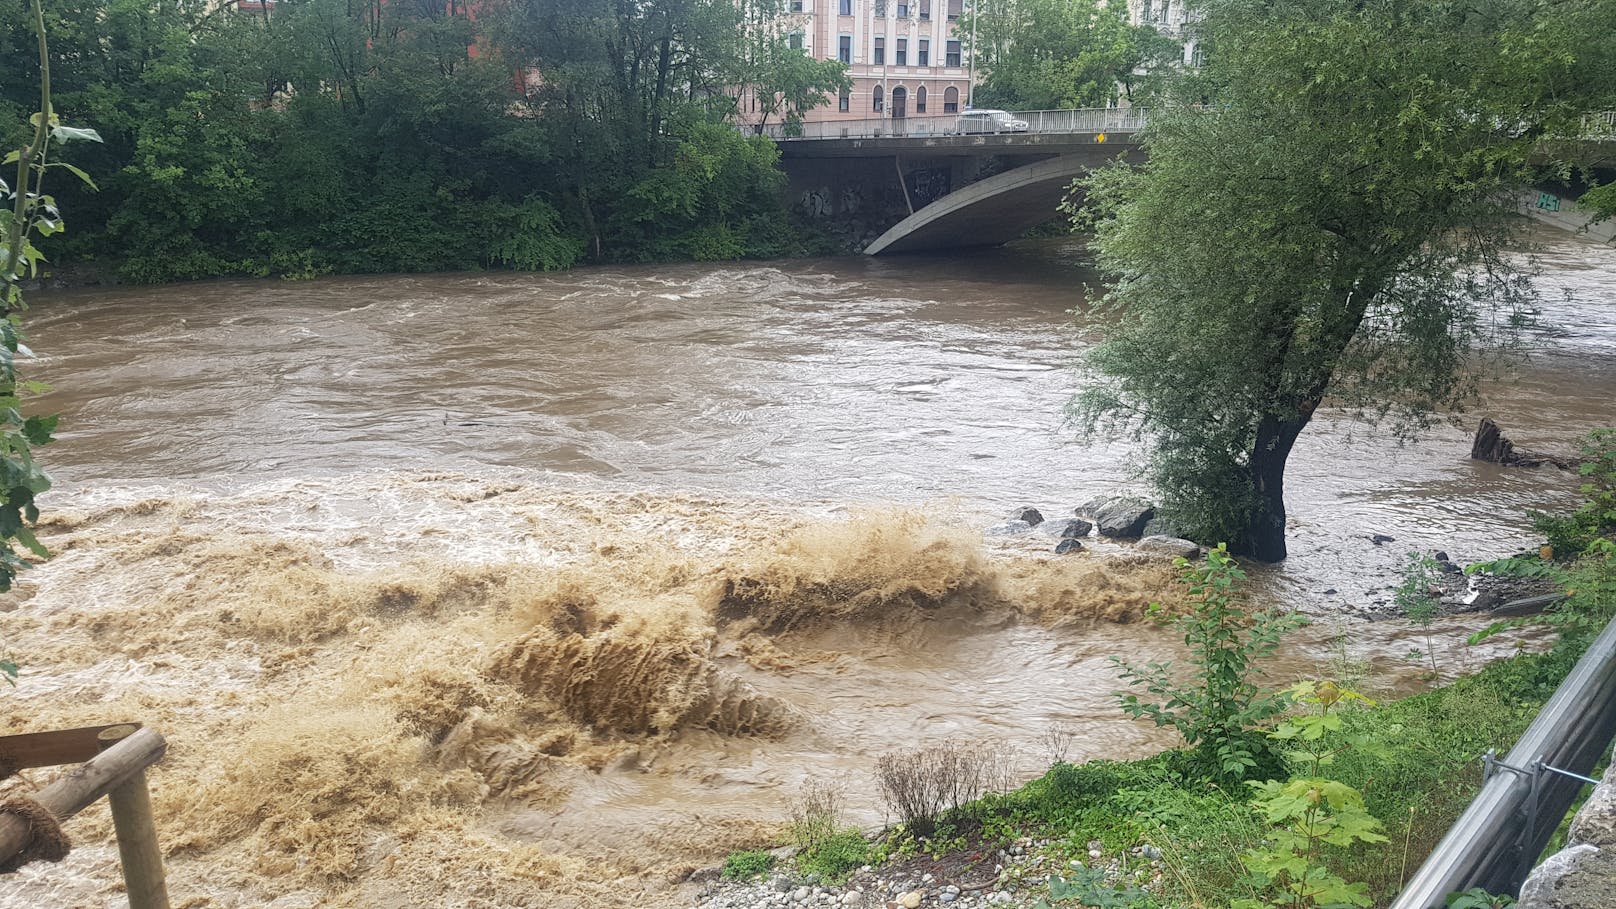 Starke Regenfälle haben am 4. August 2020 u.a in Graz für Mur-Hochwasser gesorgt. Im Bild die Situation bei der Augartenbrücke.